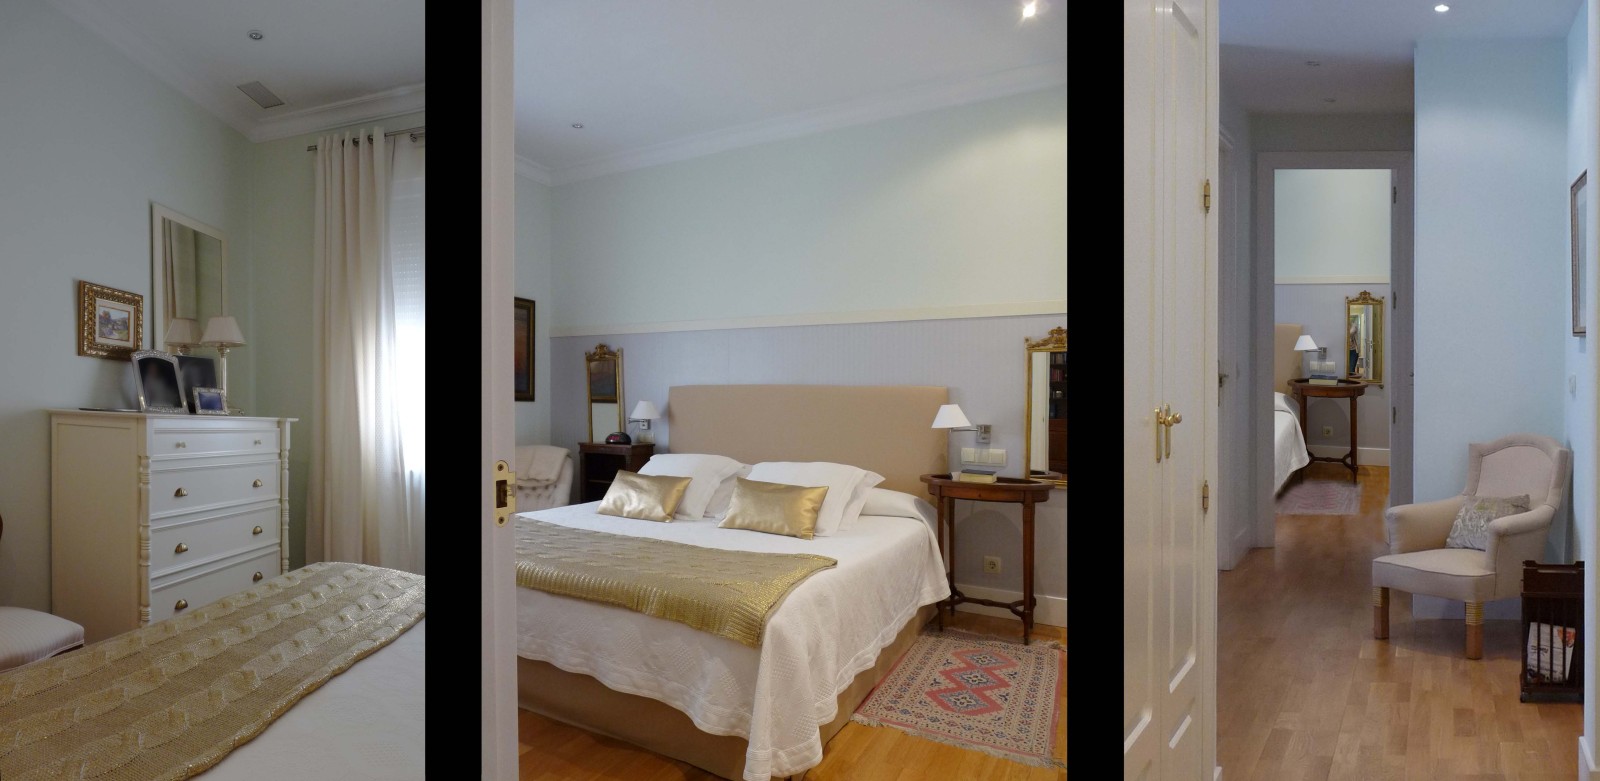 El dormitorio principal se actualizó el mobiliario y se apostó por potenciar la luminosidad usando tonos dorados.